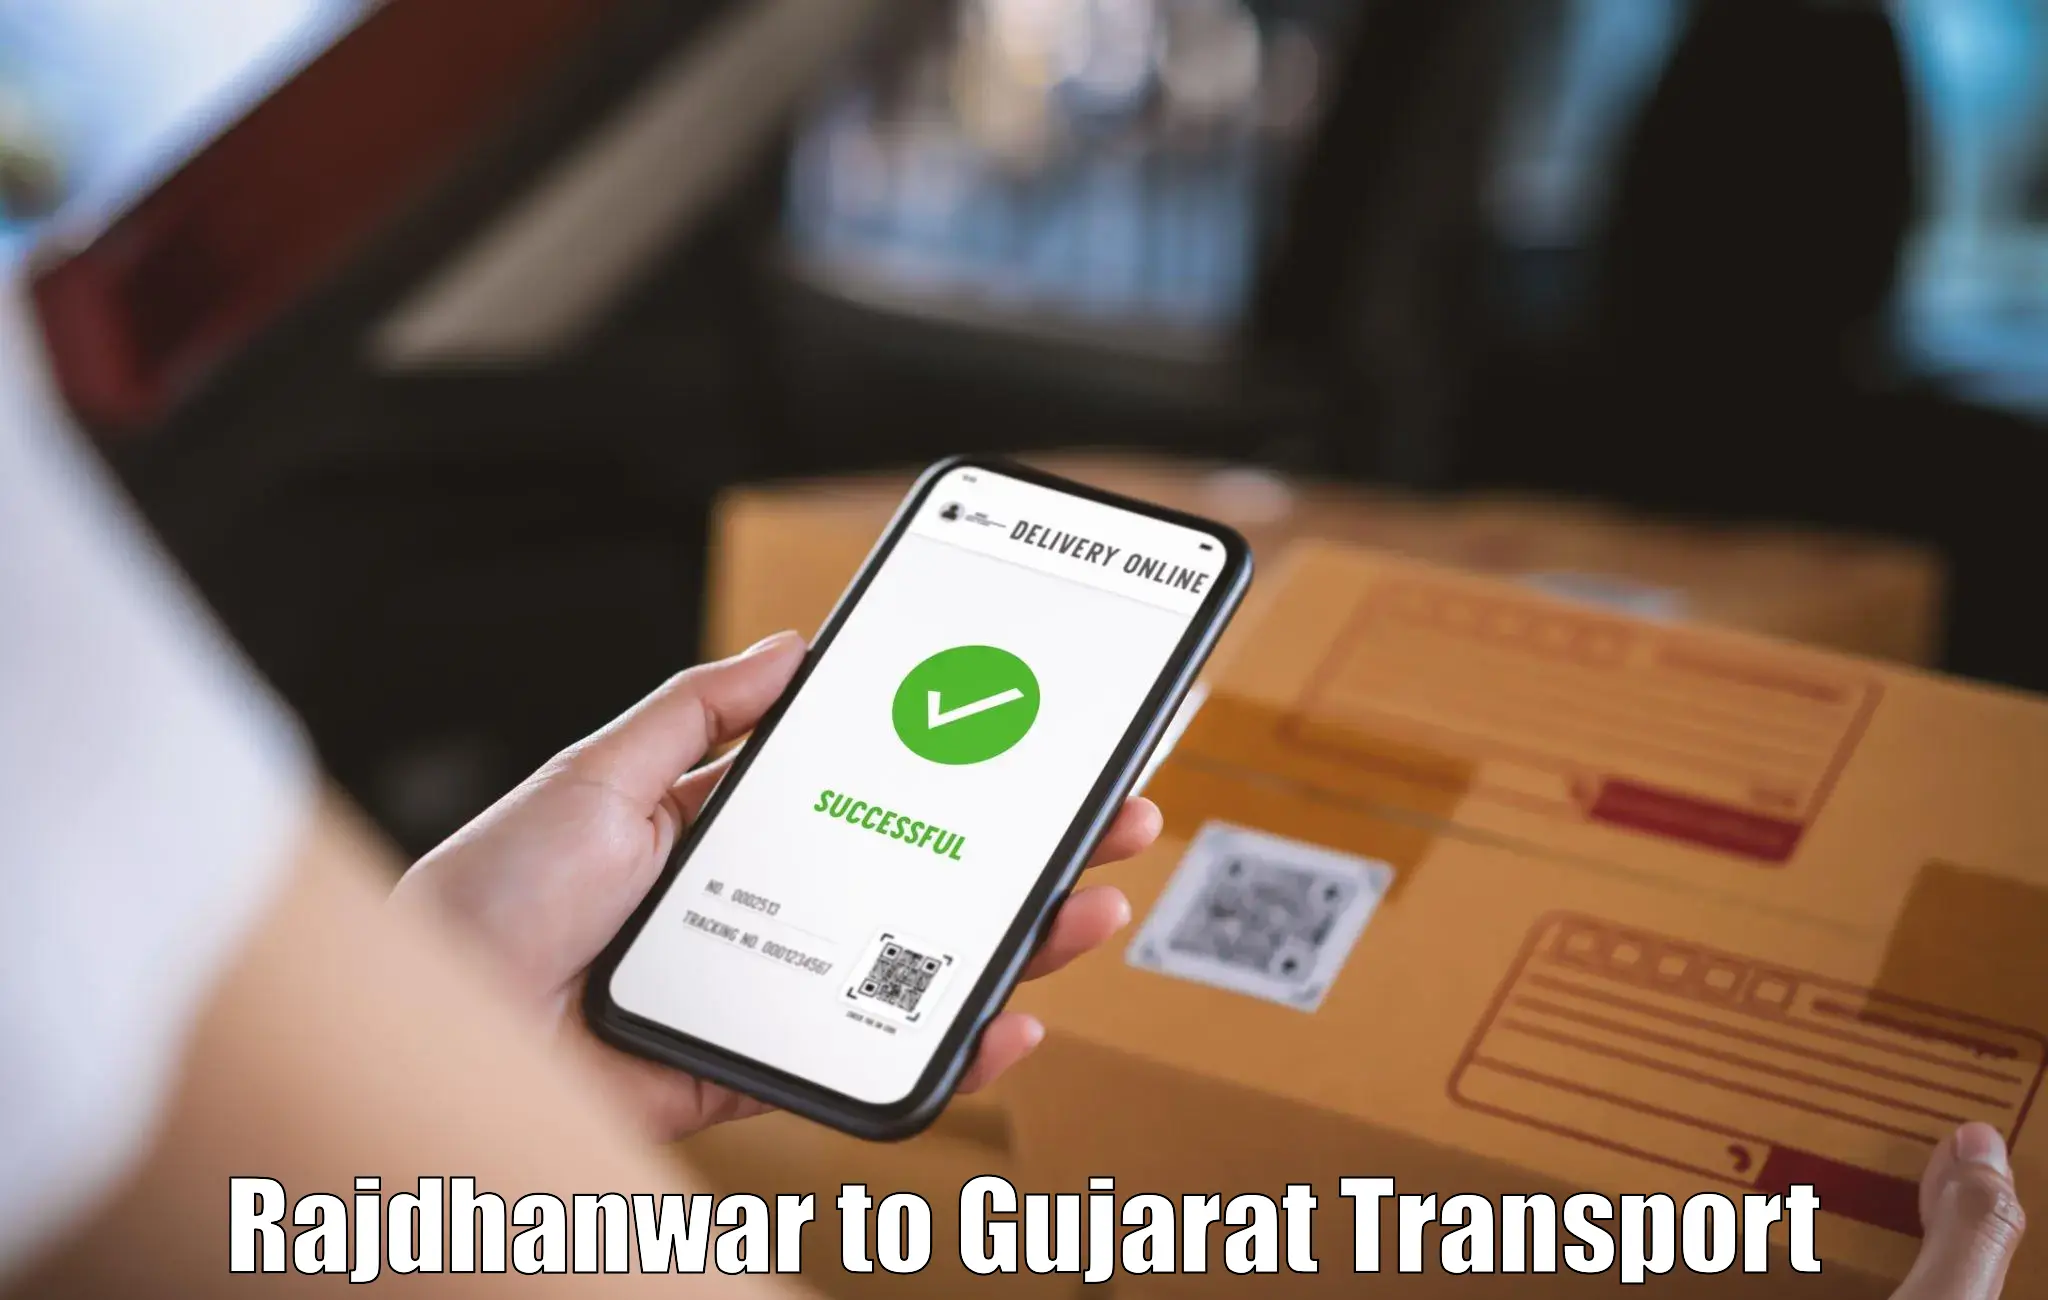 Furniture transport service Rajdhanwar to Mundra